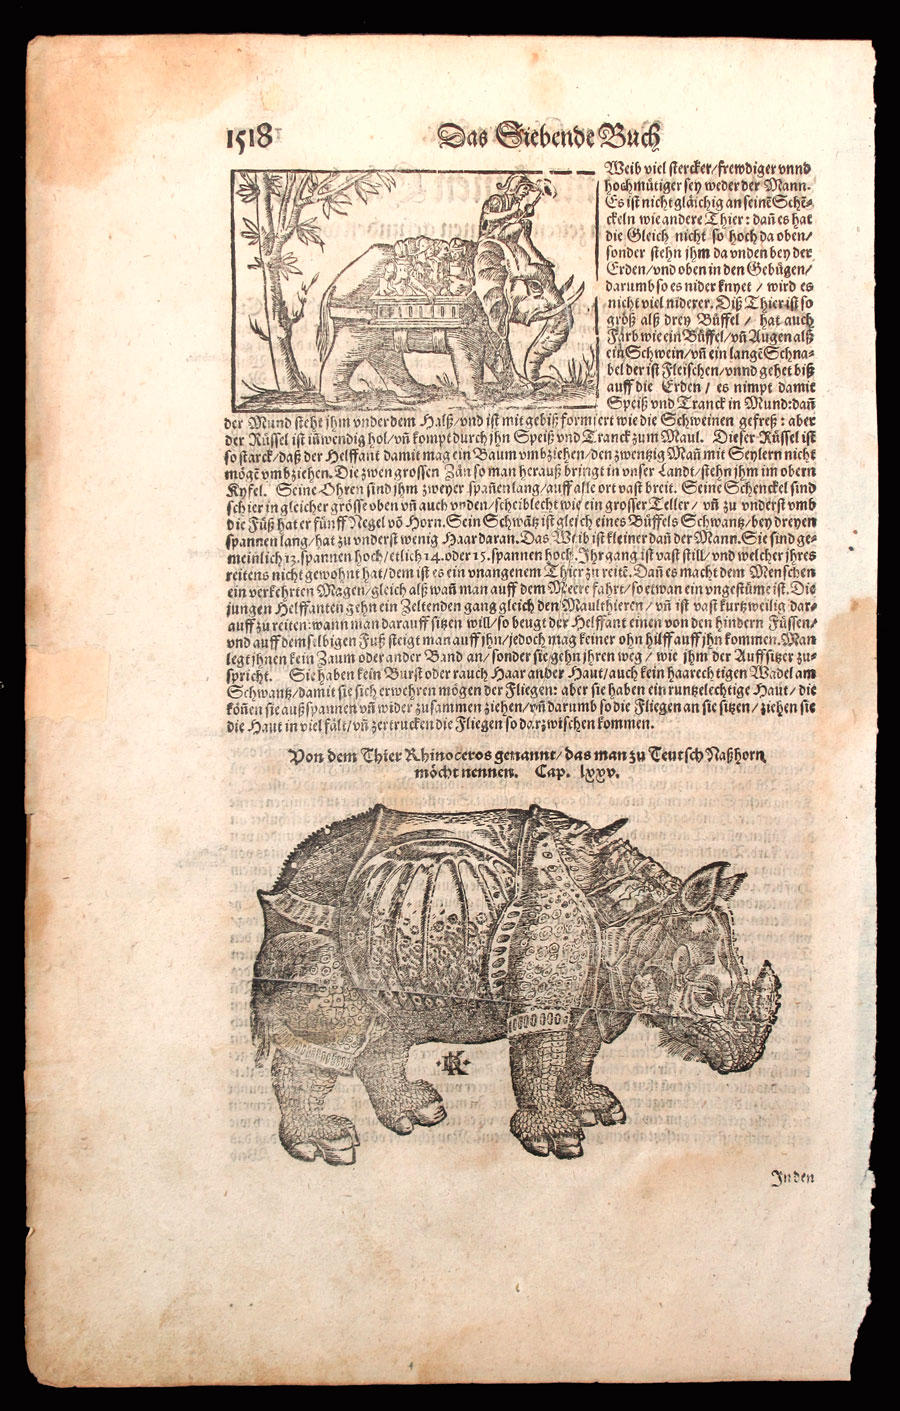 c 1550-1628 Rhinoceros by David Kandel after Albrecht Durer